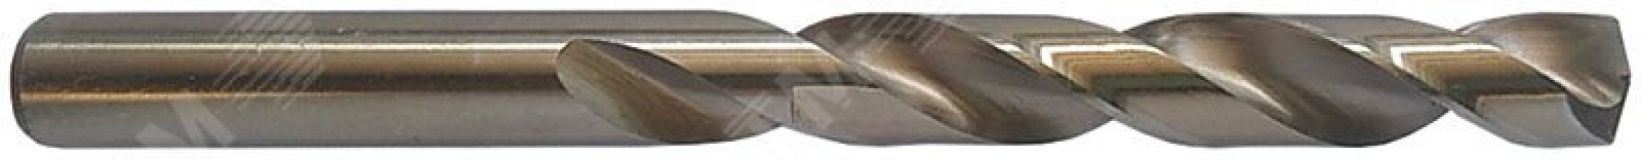 Сверло по металлу Cutop Profi с кобальтом 5% 5.5 x 93 мм, 2 шт 48-378 CUTOP